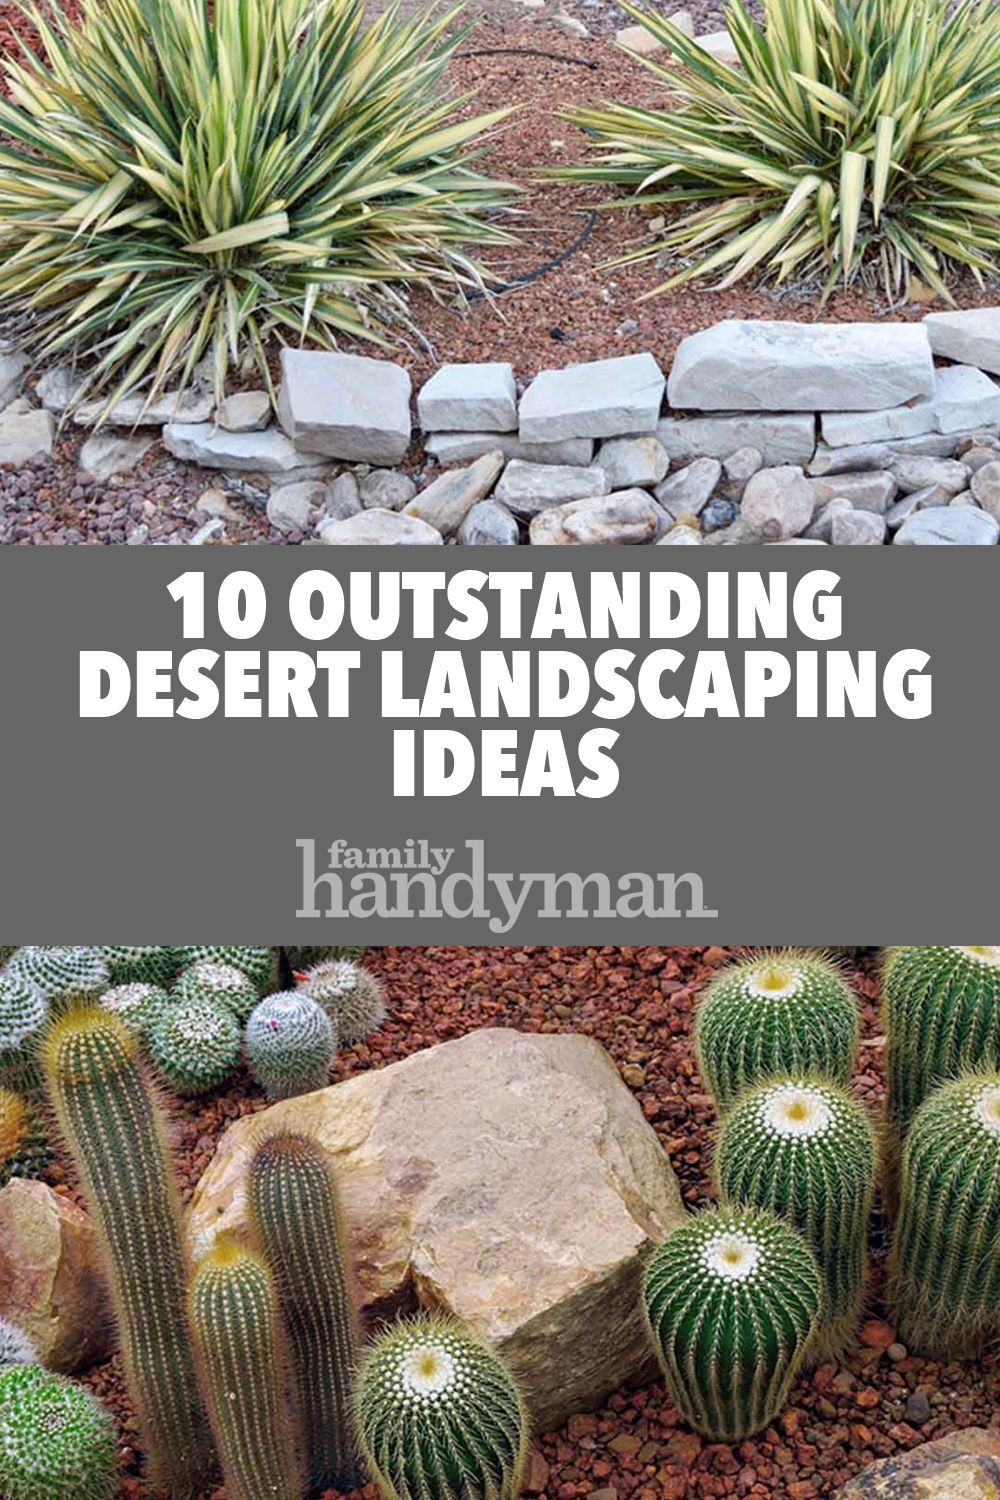 10 Outstanding Desert Landscaping Ideas -   19 desert plants Landscaping ideas